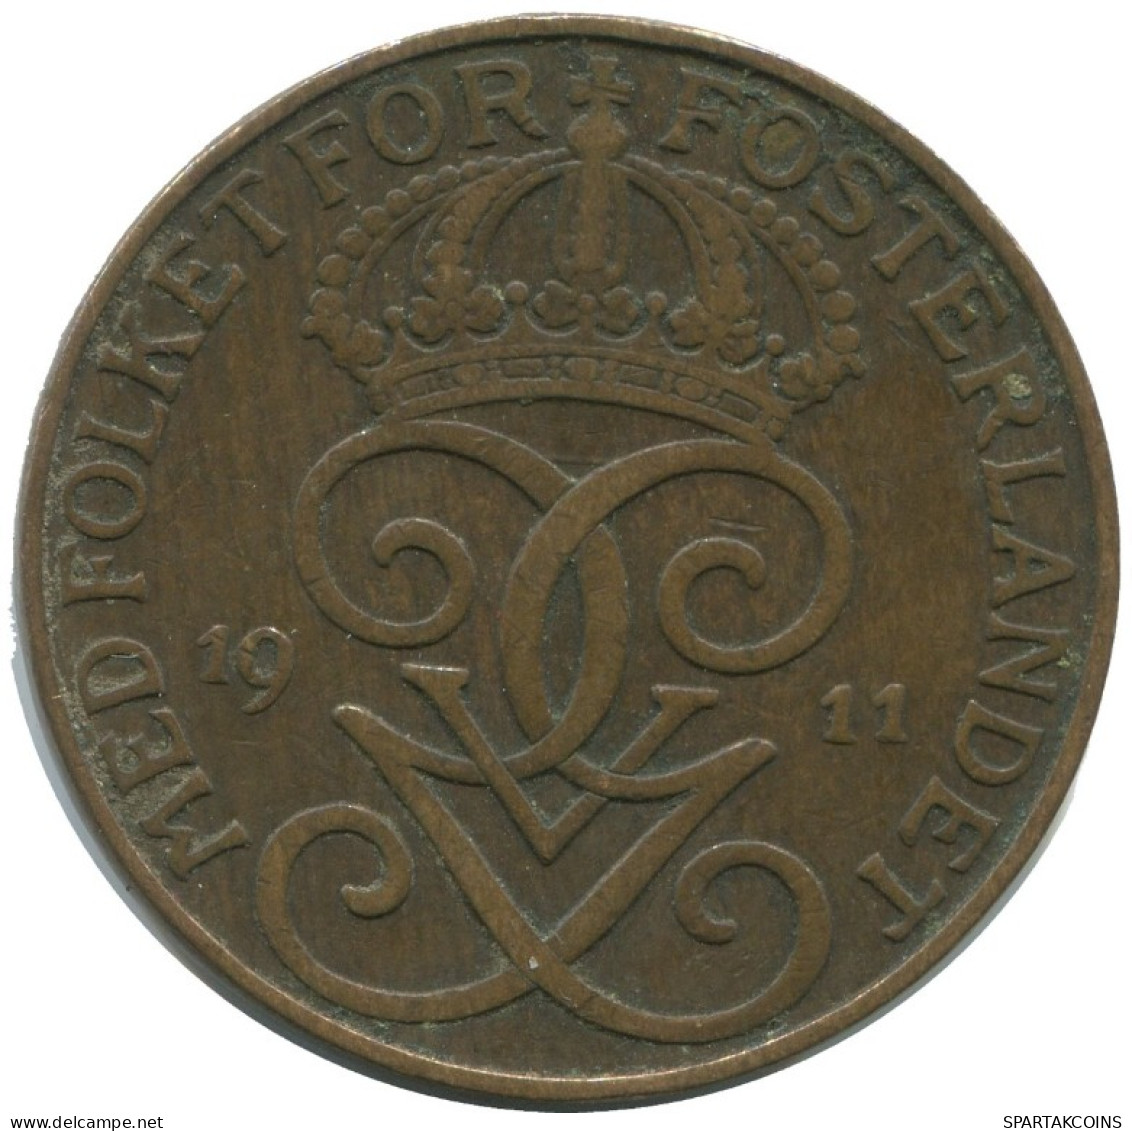 5 ORE 1911 SWEDEN Coin #AC447.2.U.A - Suecia